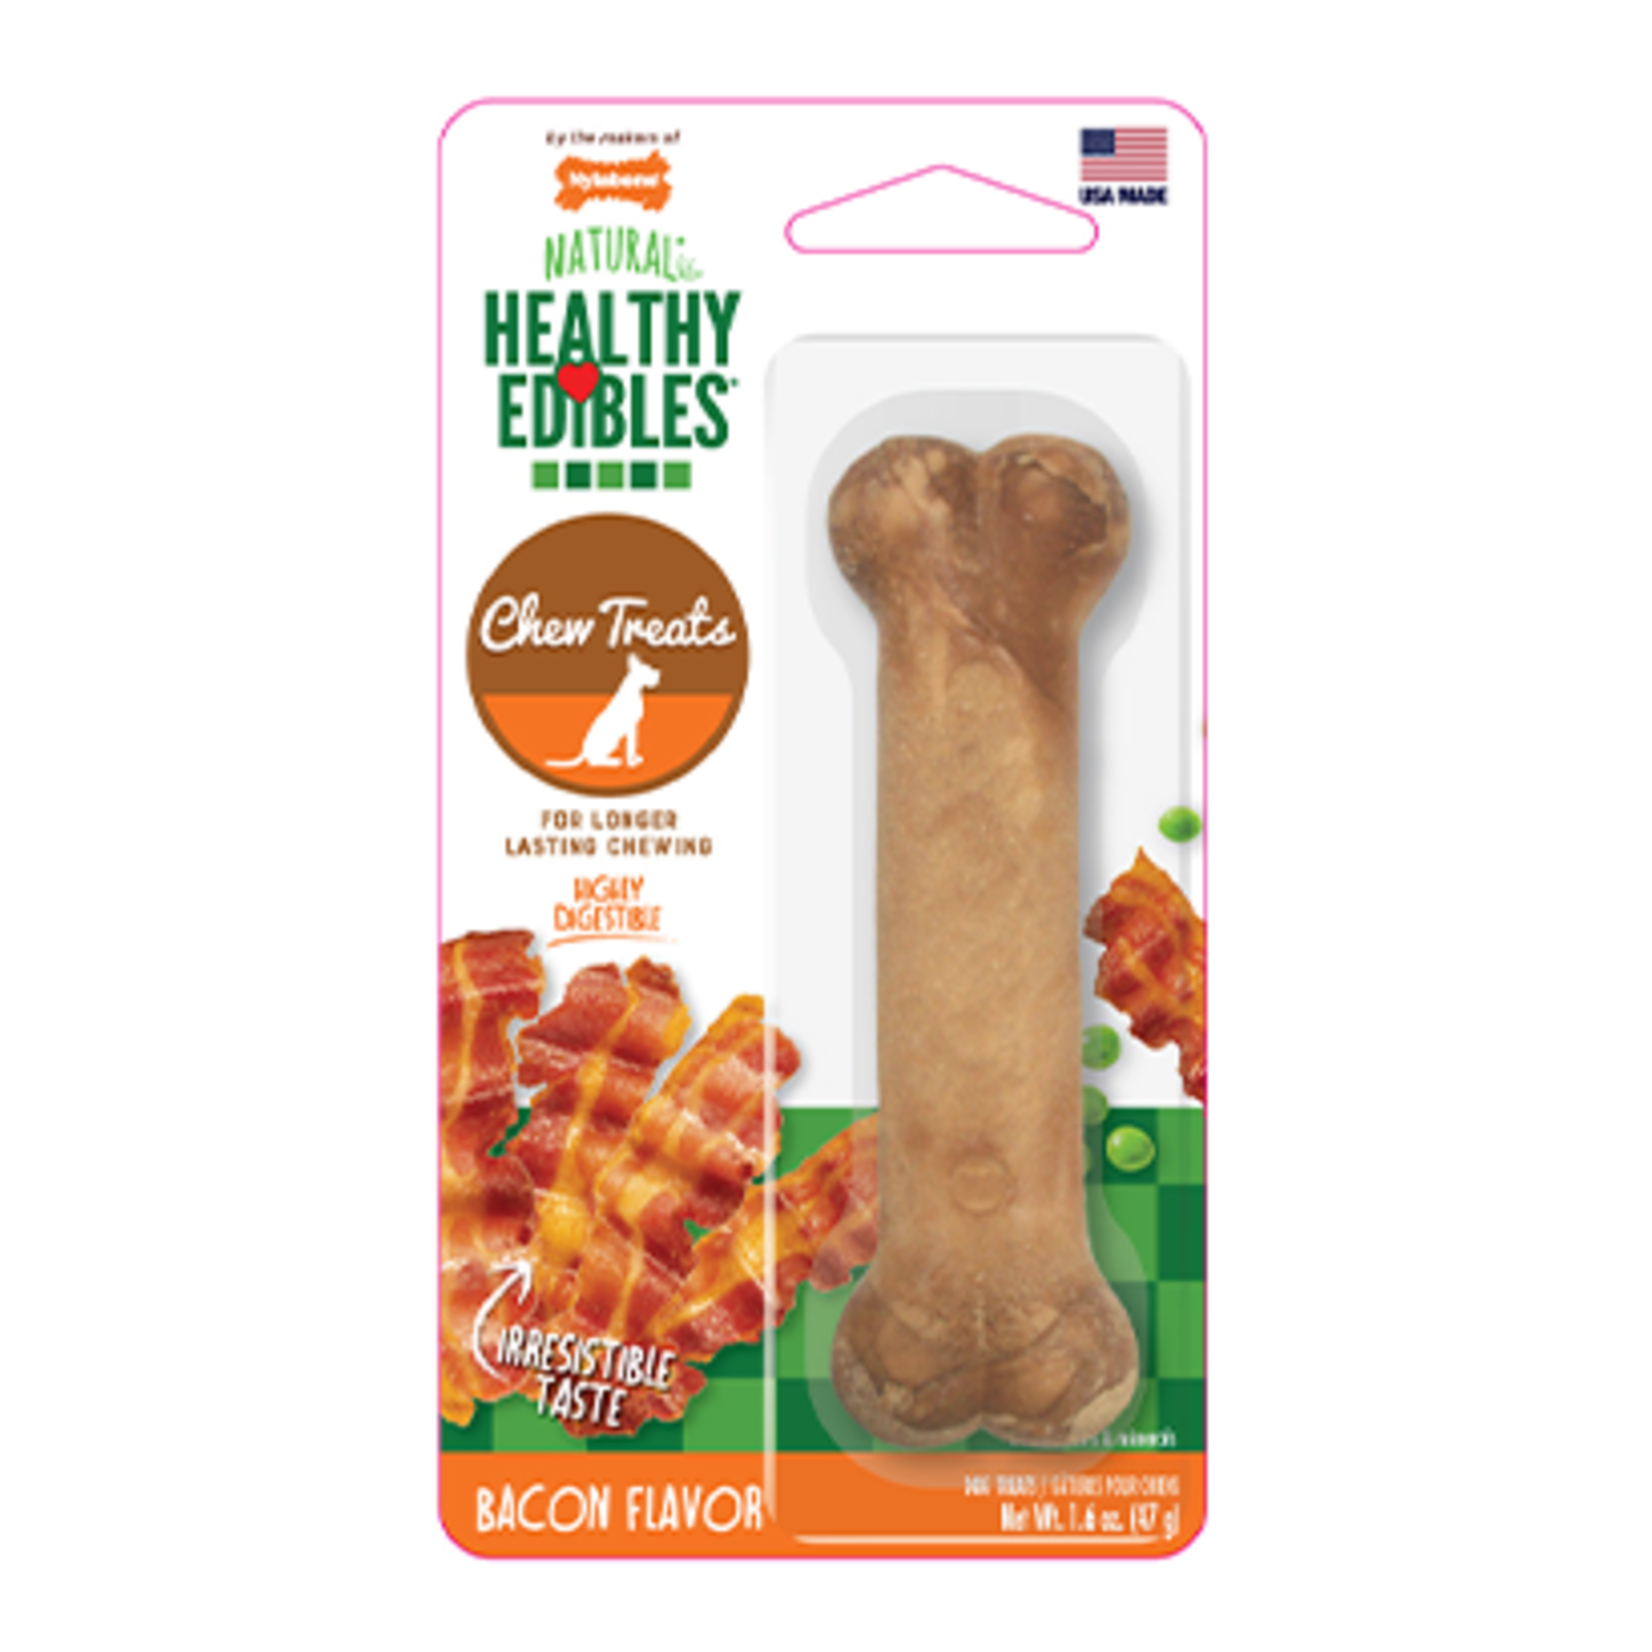 Nylabone Healthy Edibles - Bacon Flavor - 47g